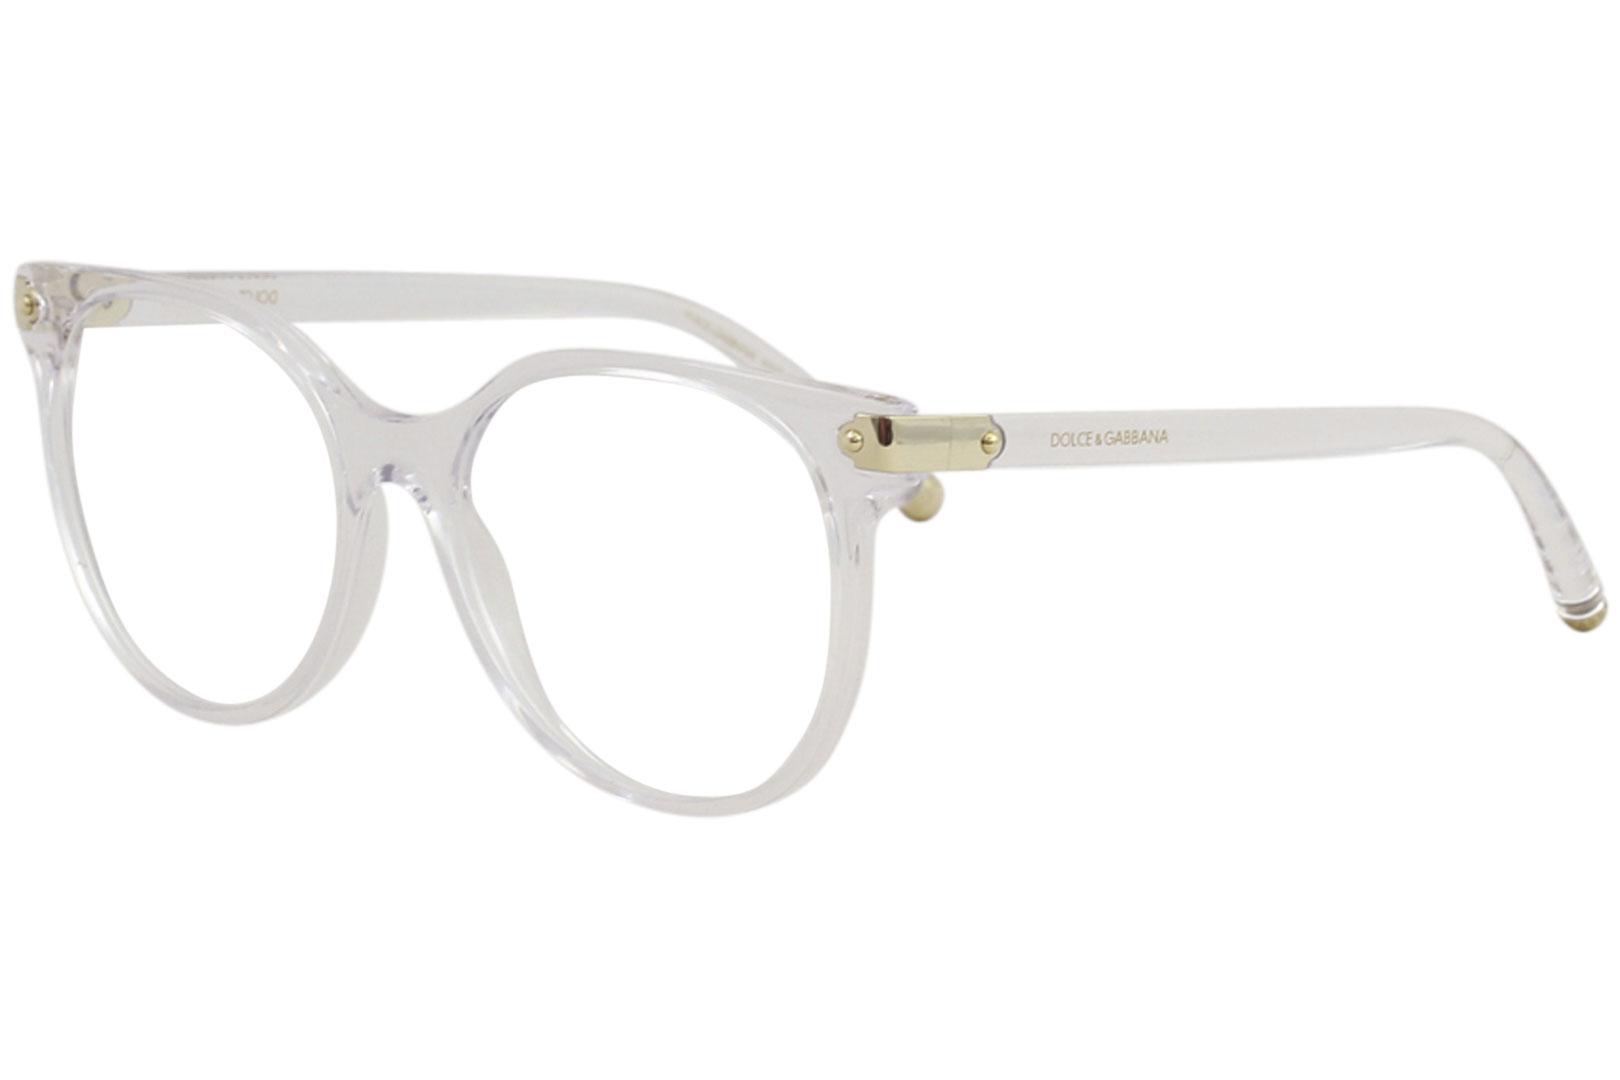 Dolce & Gabbana Women's Eyeglasses D&G DG5032 DG/5032 Full Rim Optical Frame - Crystal/Gold   3133 - Lens 53 Bridge 17 B 48.3 ED 57.1 Temple 140mm